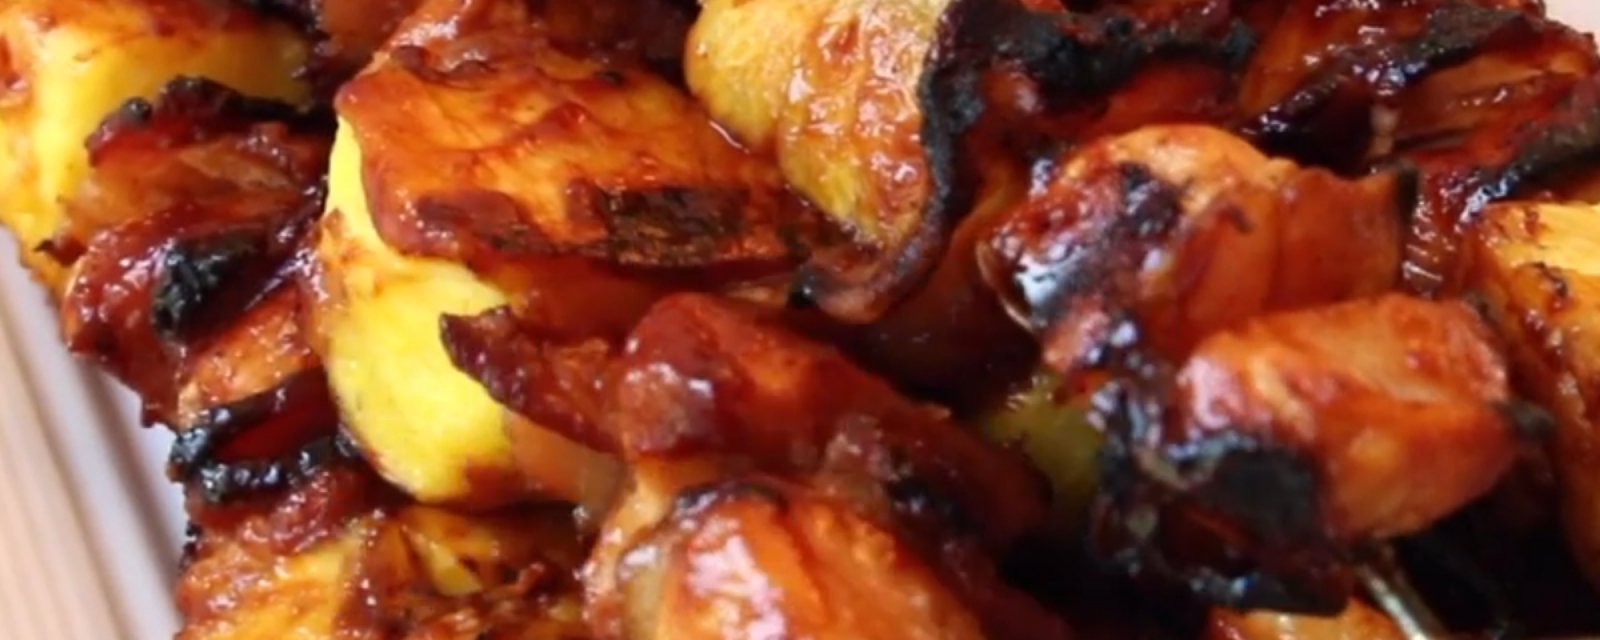 Kébabs poulet barbecue à l'ananas et au bacon